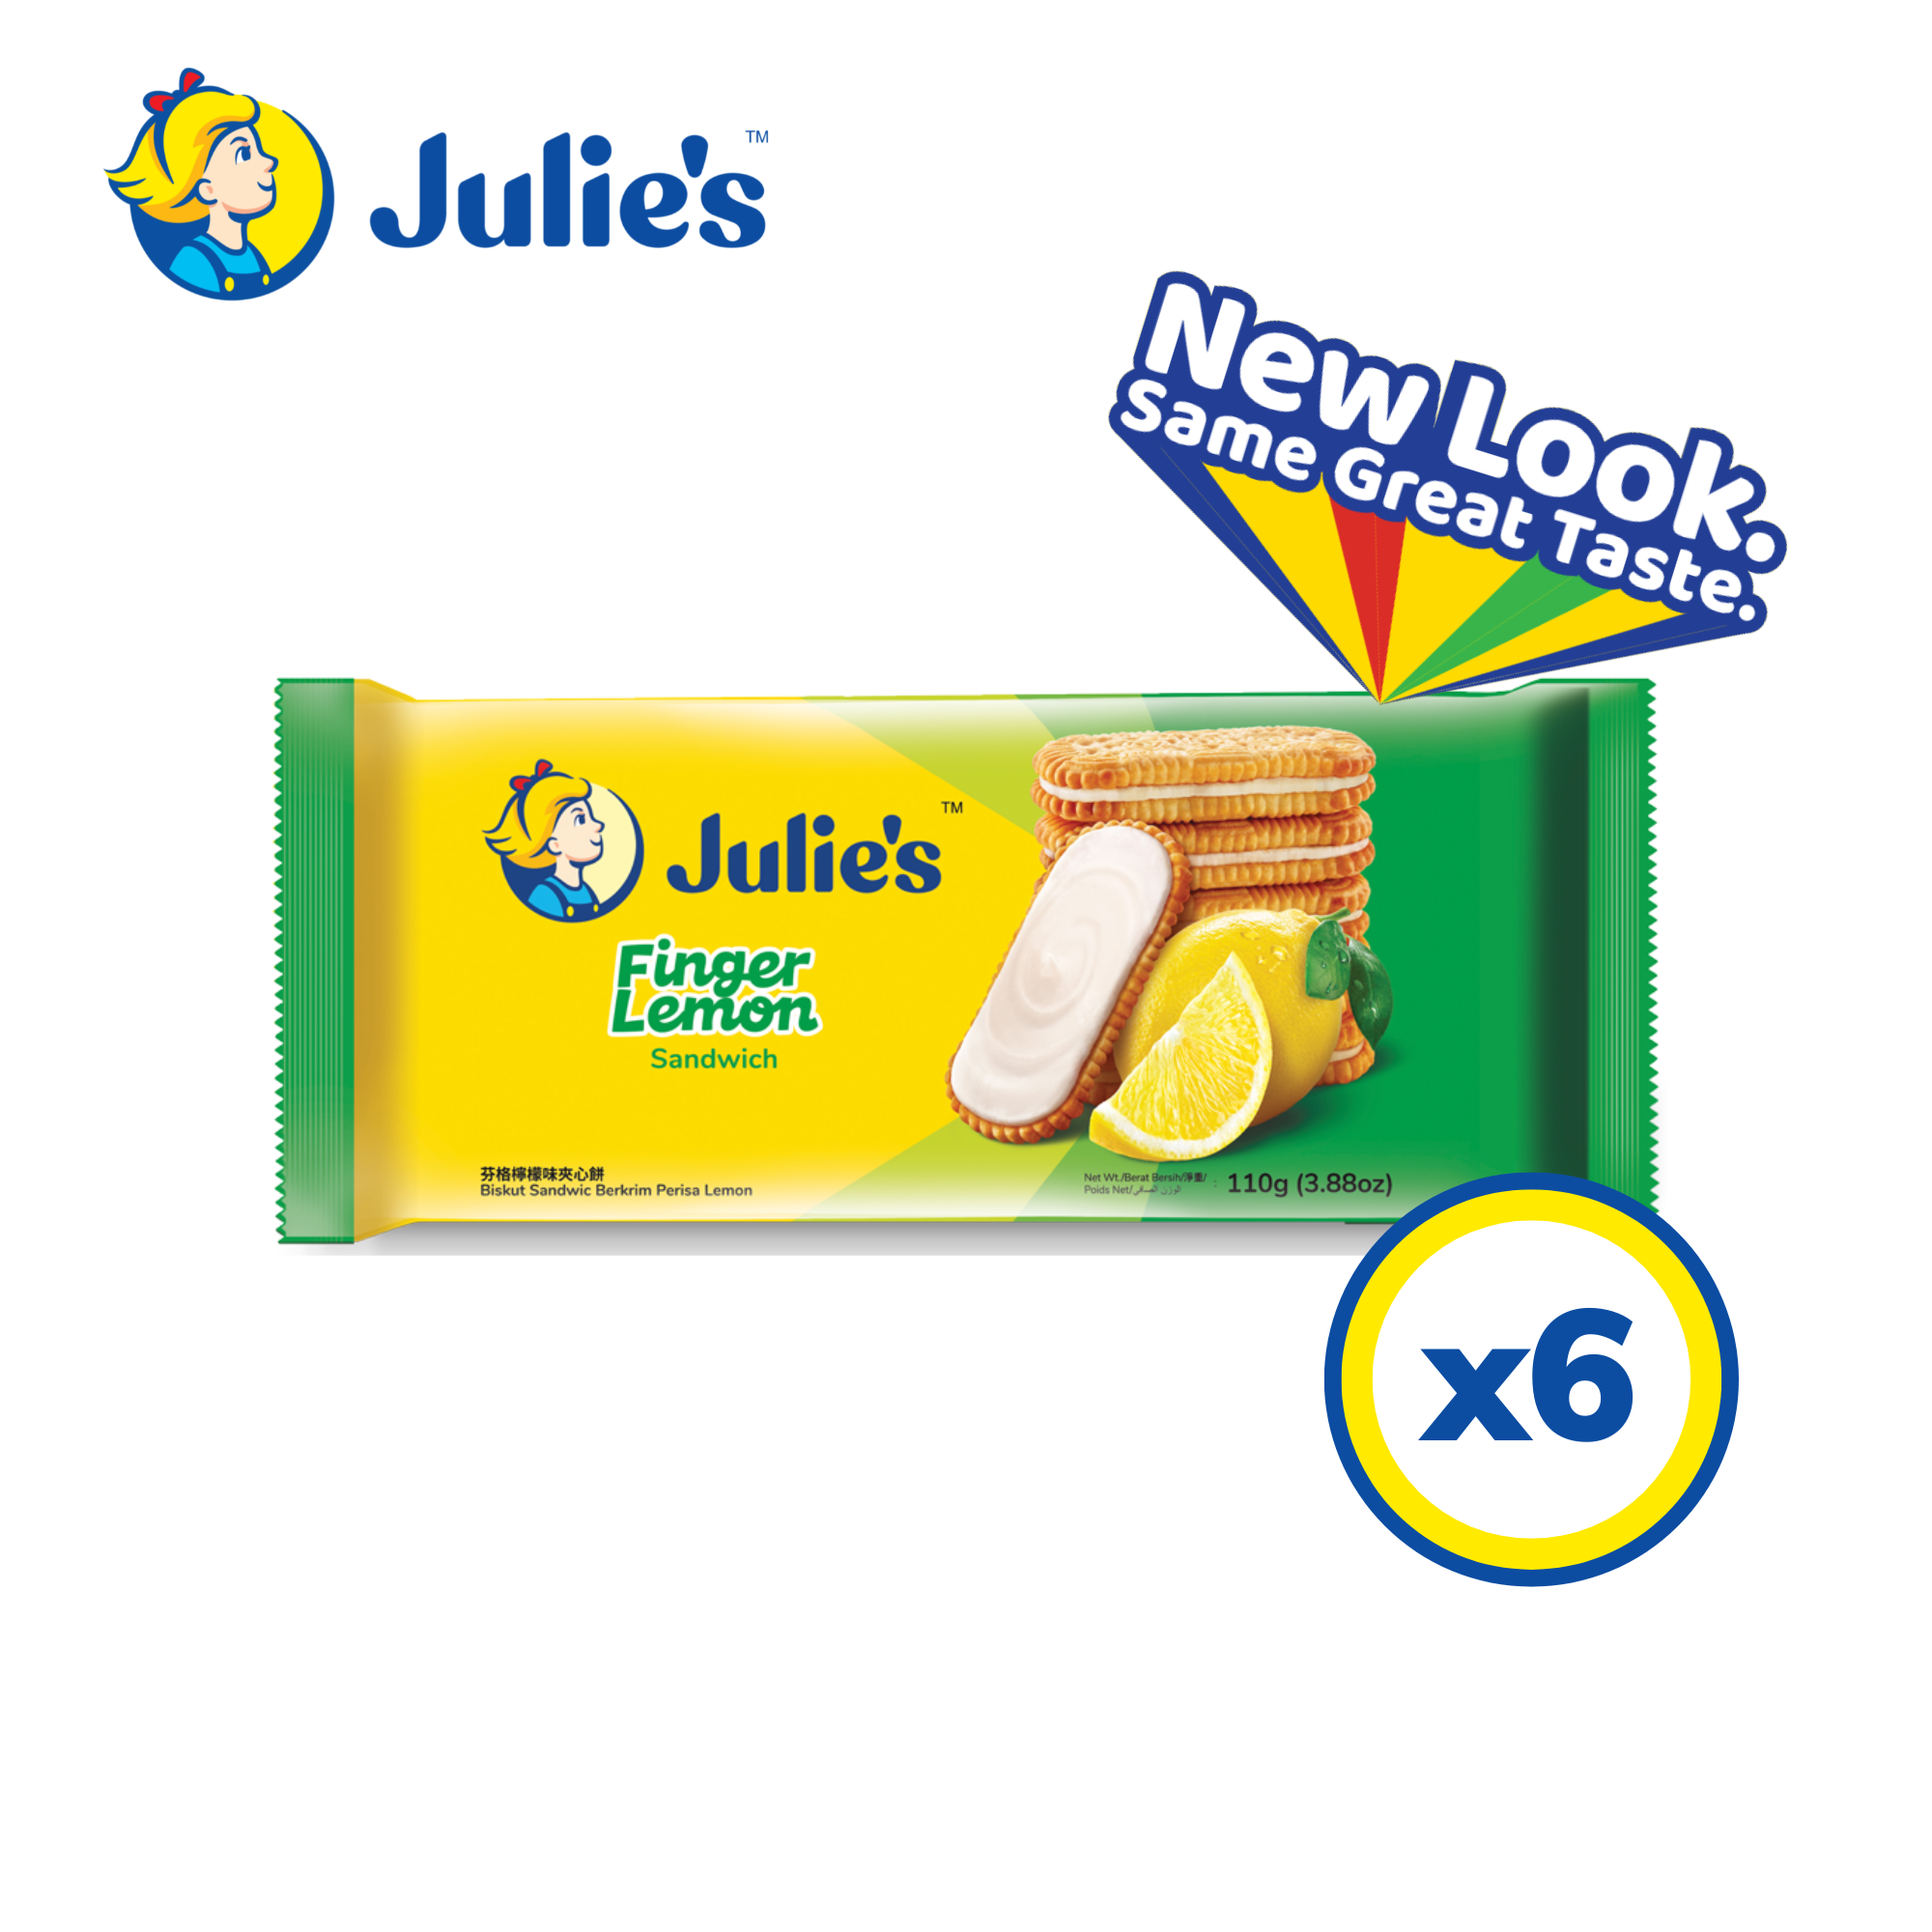 Julie\'s Finger Lemon Sandwich 110g x 6 packs